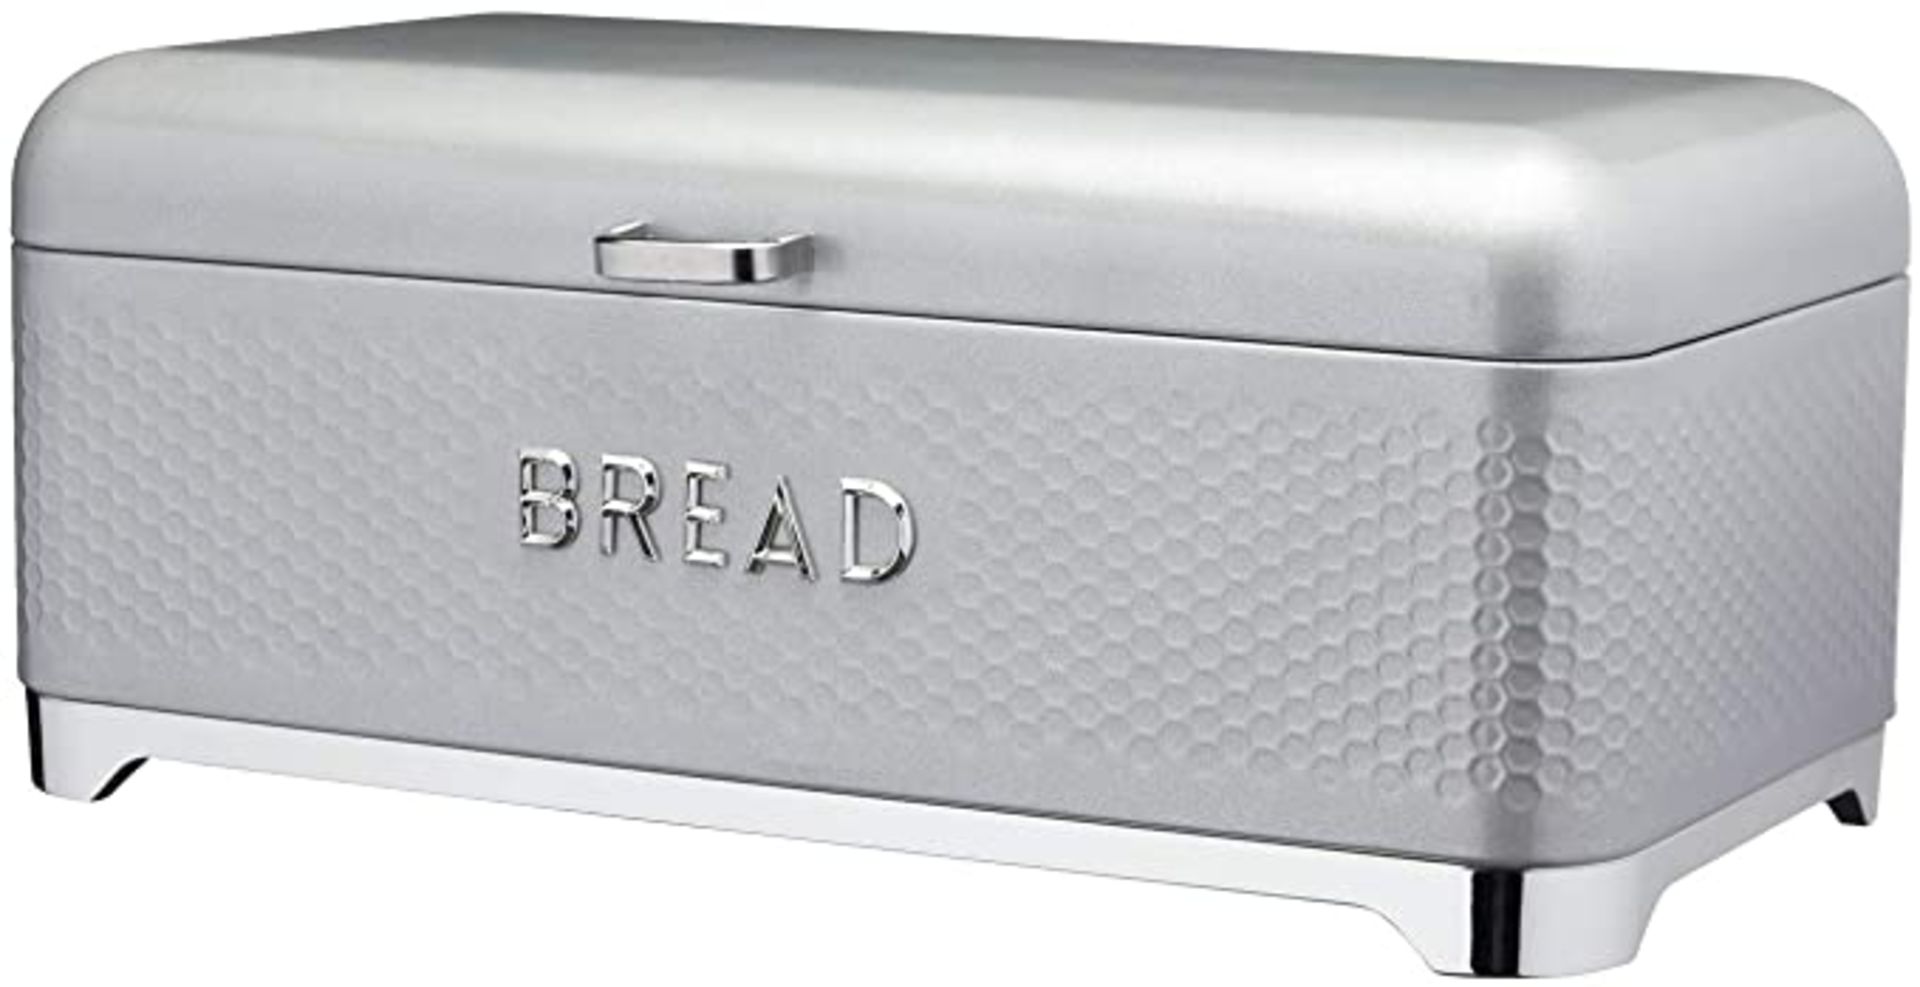 Kitchen Craft Breadbin. RRP £39.99 - GRADE U